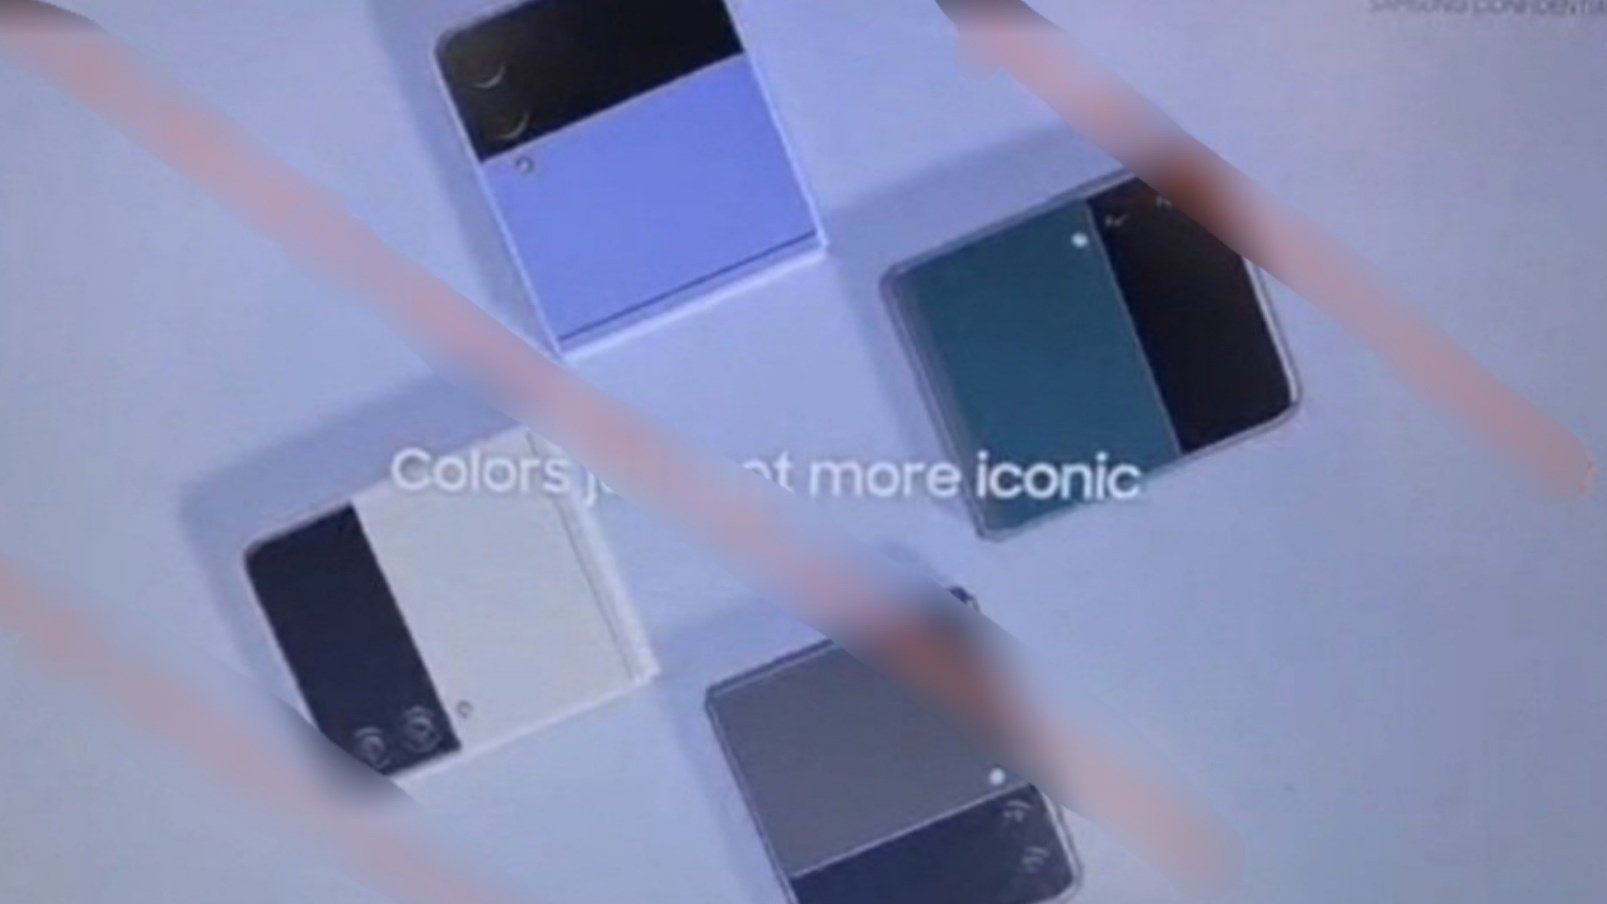 cena Galaxy Z Flip 3 może zostać ustalona na około 1000 dolarów